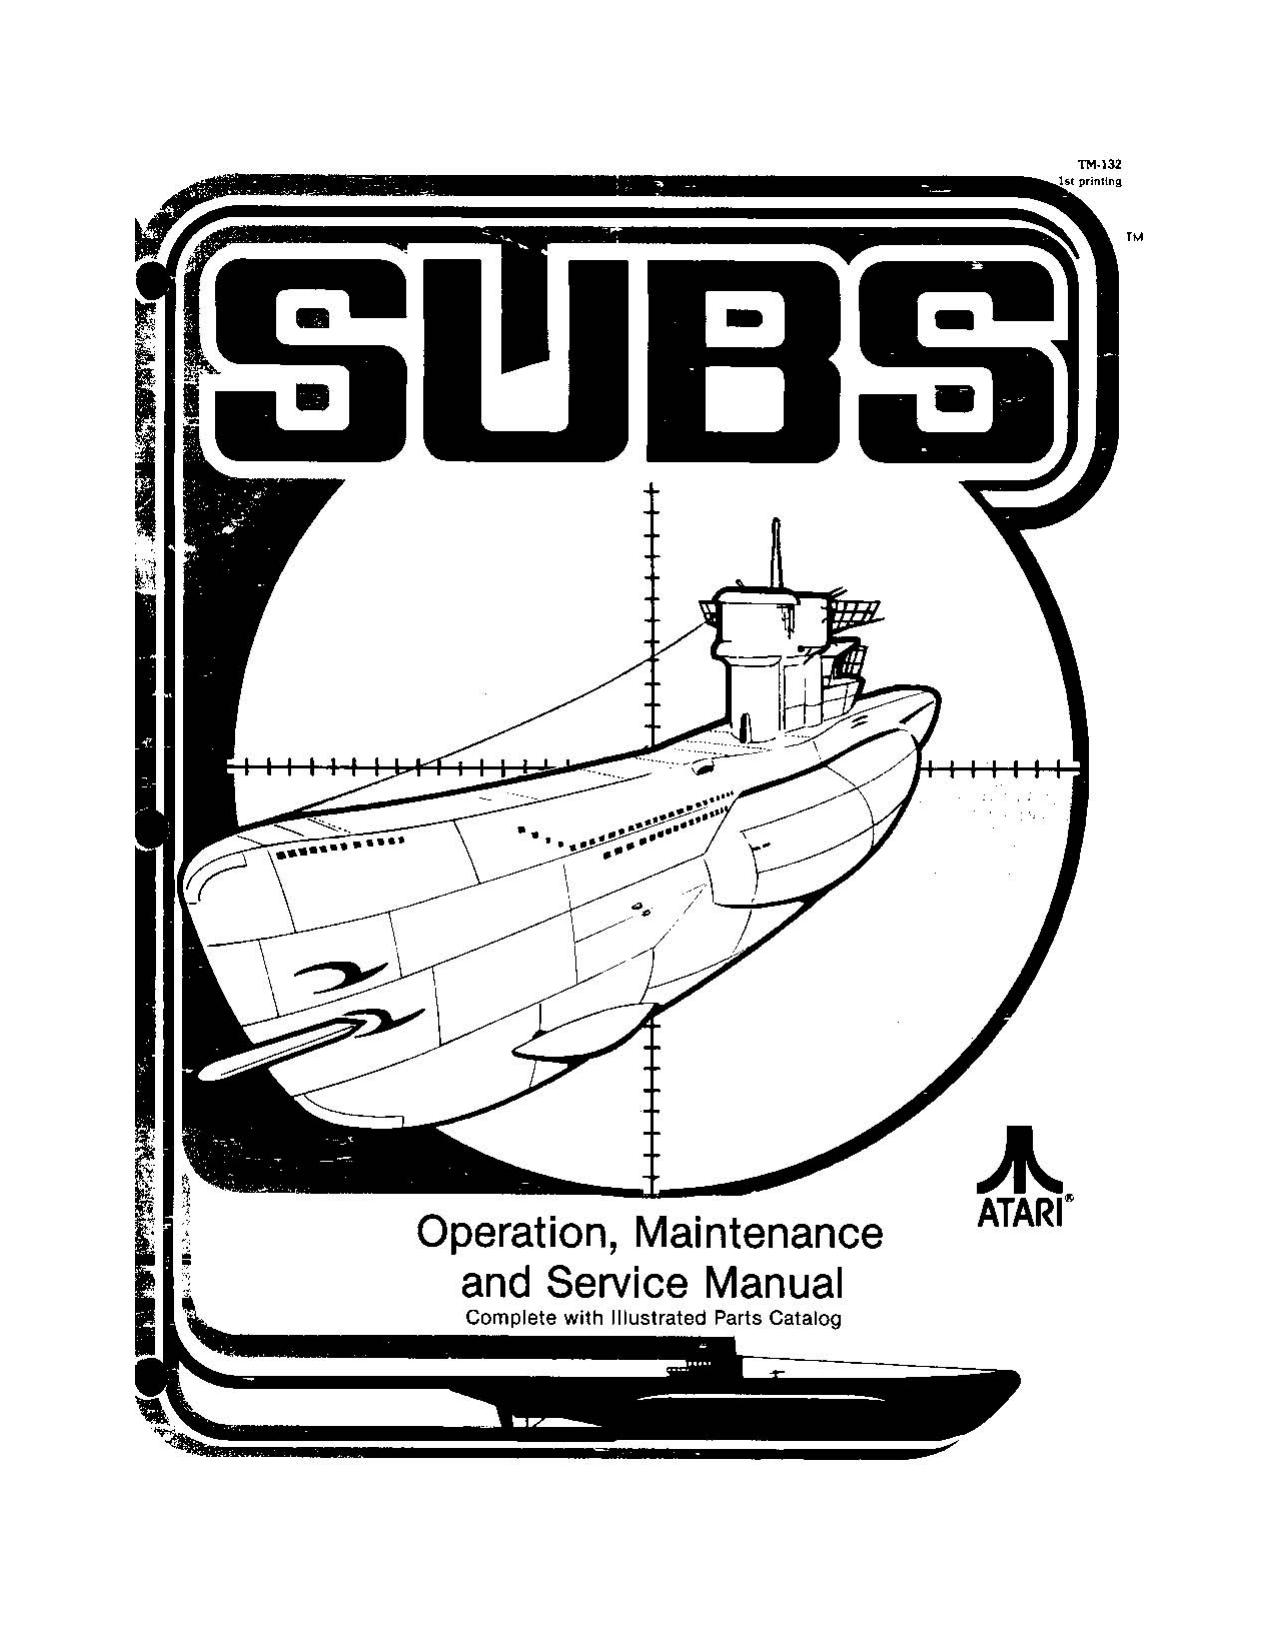 Subs (TM-132 1st Printing) (Op-Maint-Serv-Parts) (U)